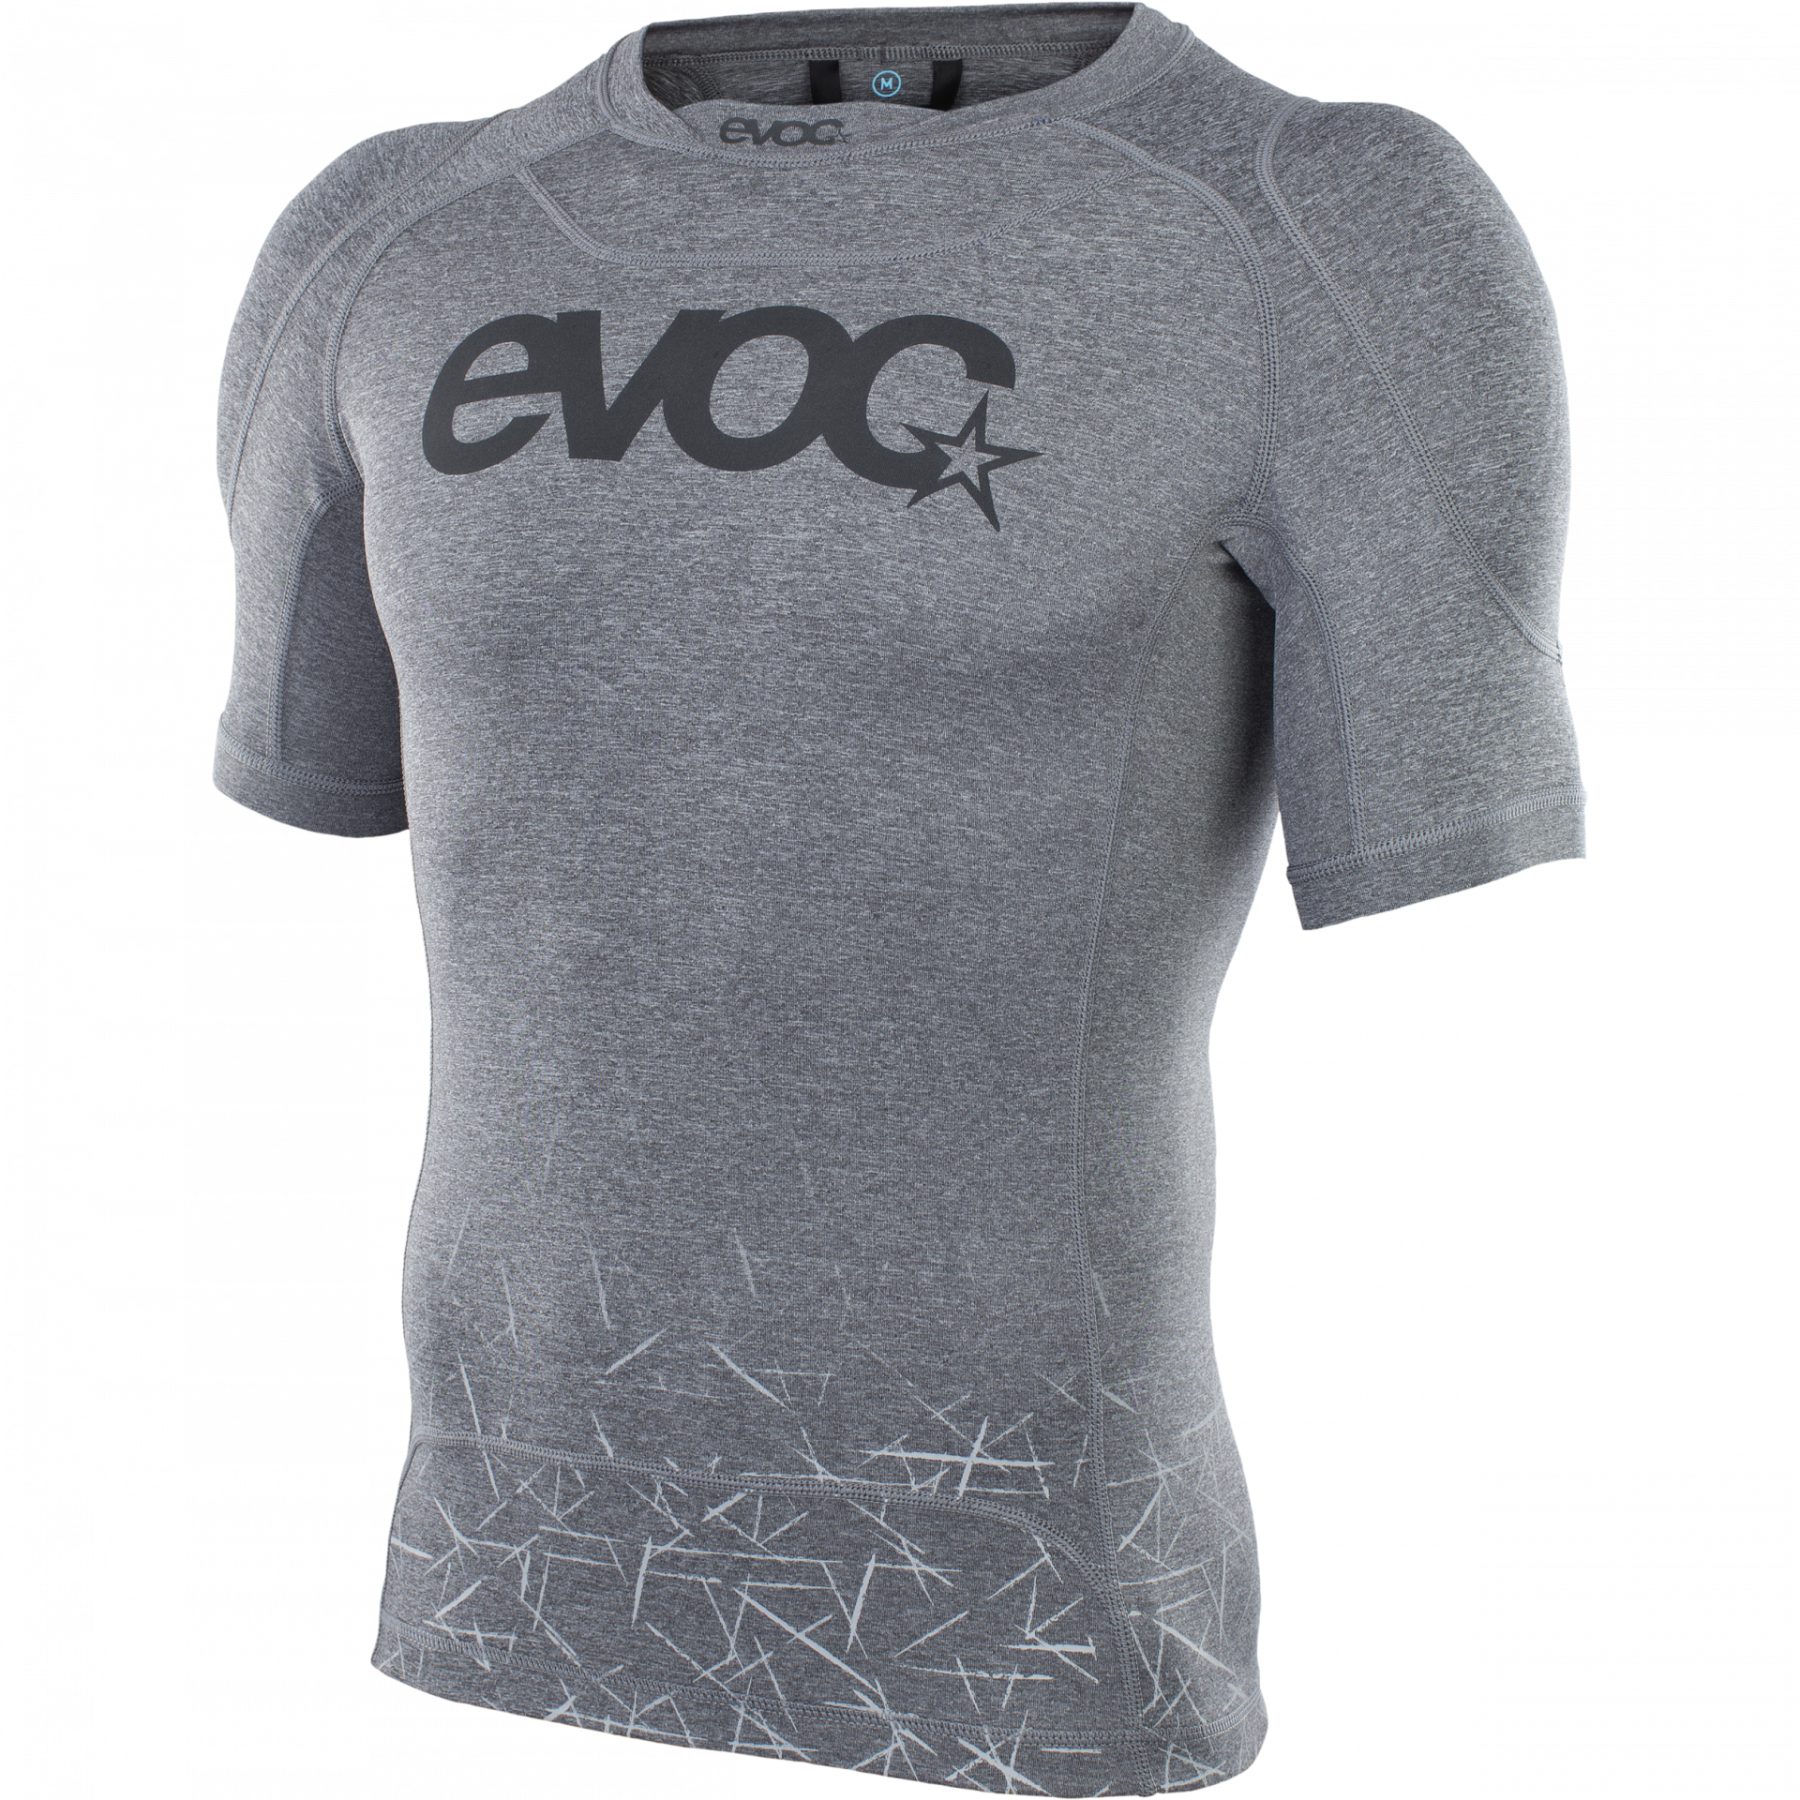 Produktbild von EVOC Enduro Shirt - Carbon Grey